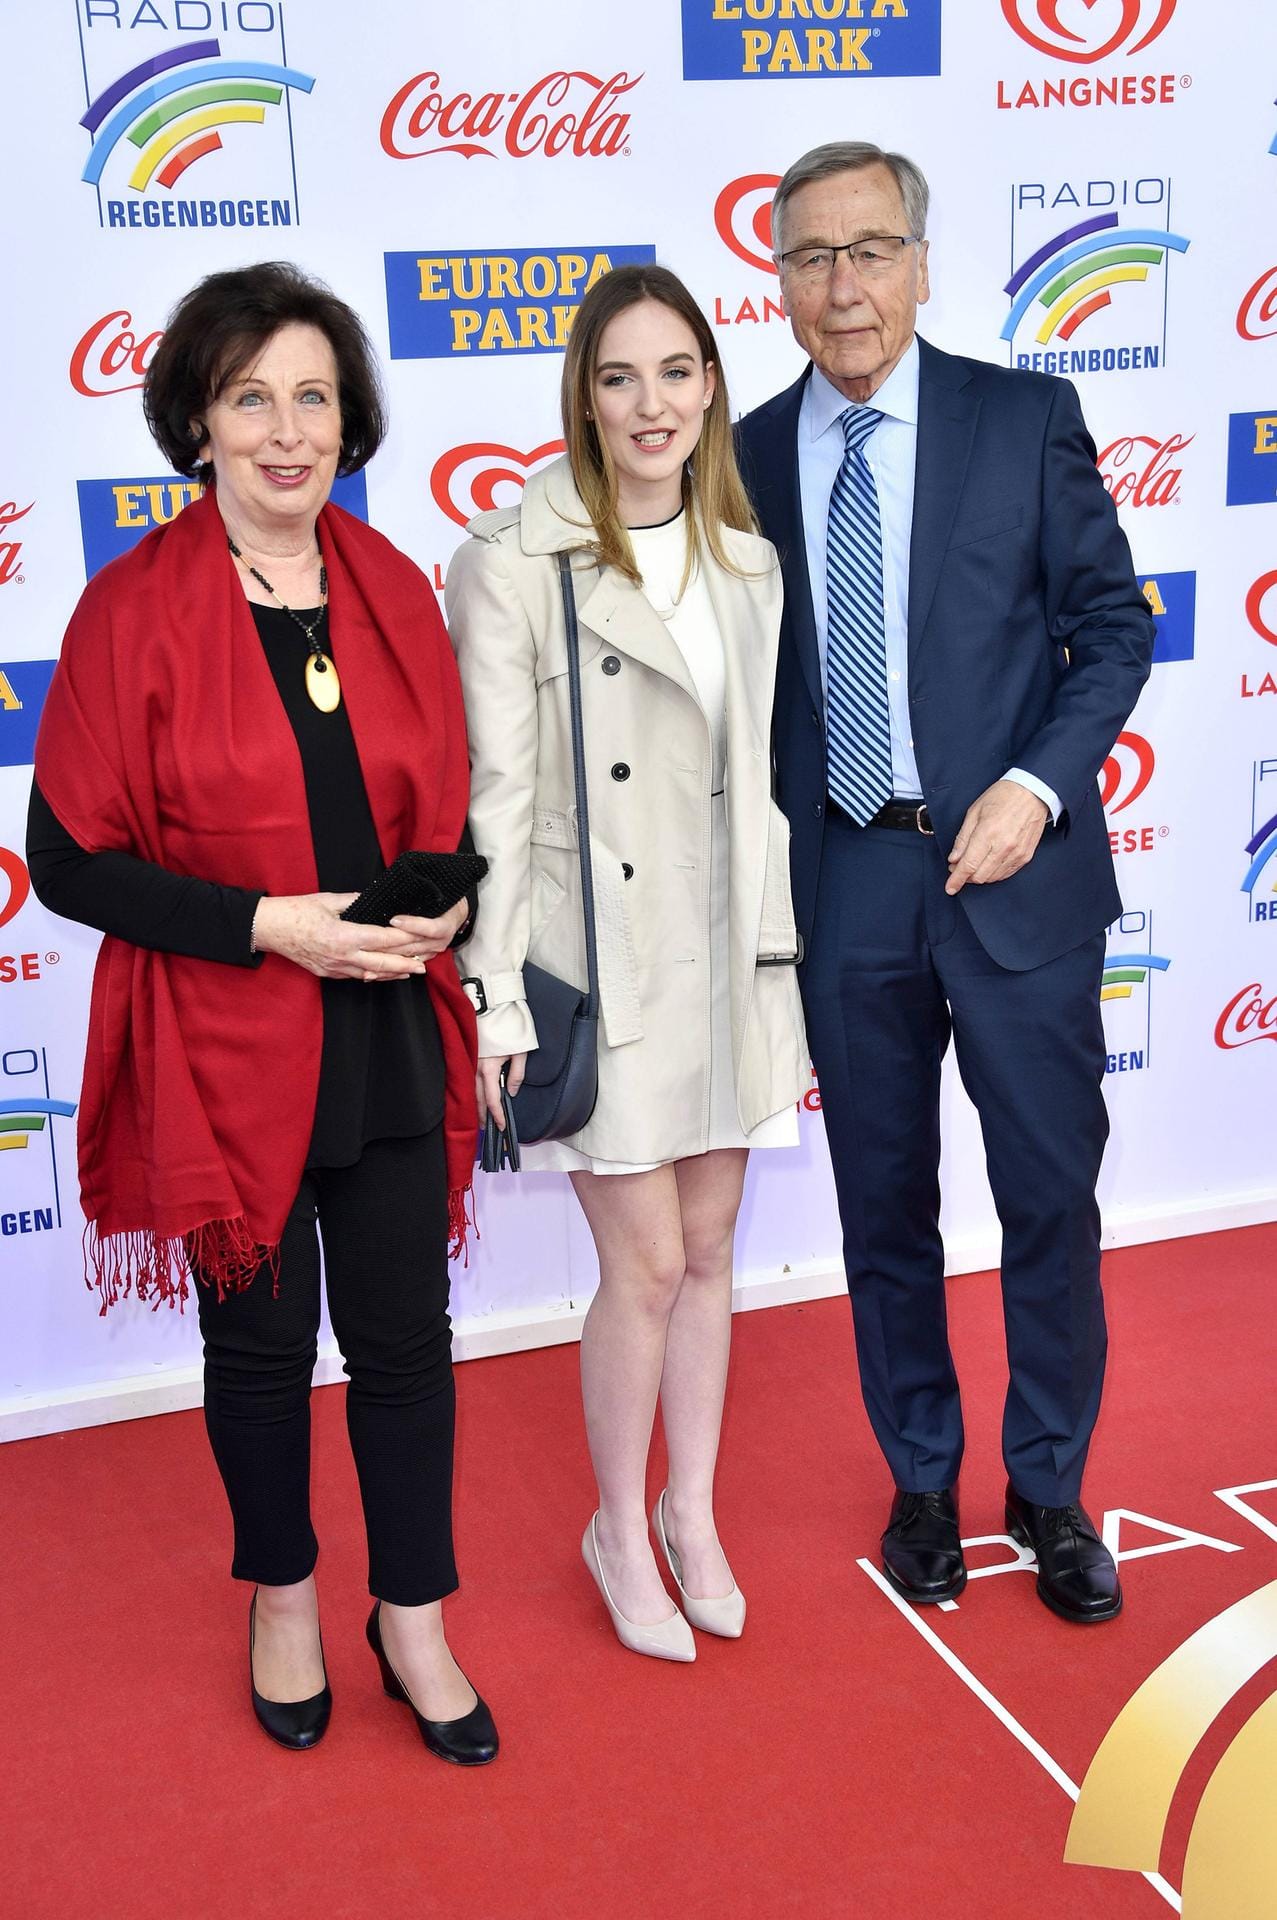 Bis zum letzten Jahr nahm Clement auch noch oft öffentliche Auftritte wahr. Hier war er mit seiner Ehefrau Karin Clement und seiner Enkelin bei der Verleihung des 22. Radio Regenbogen Award 2019.